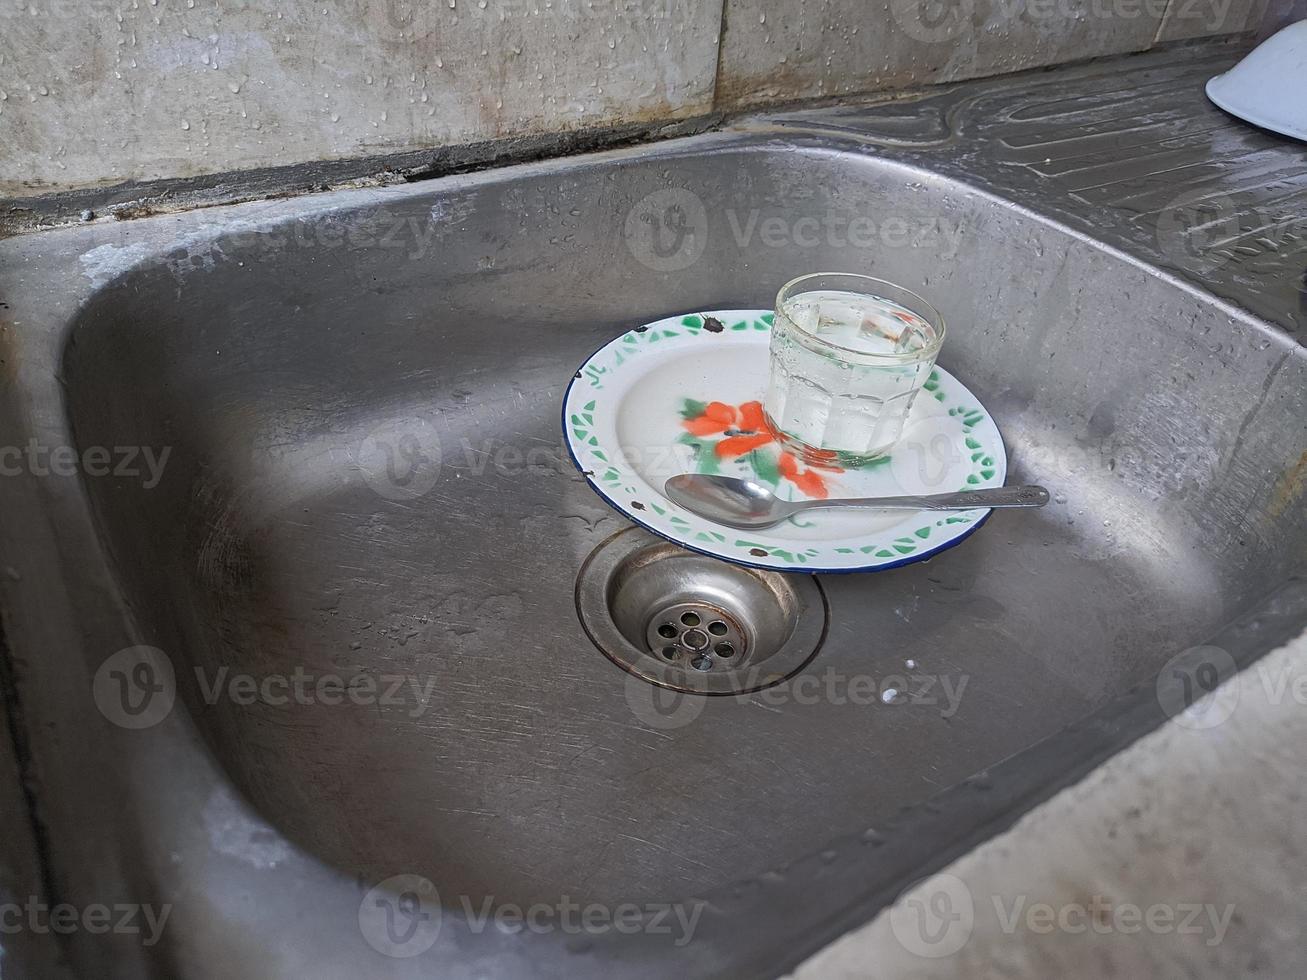 platos y vasos sucios en el fregadero que no han sido lavados. montones de platos sucios y vasos que no han sido lavados, la vida real al final del año foto